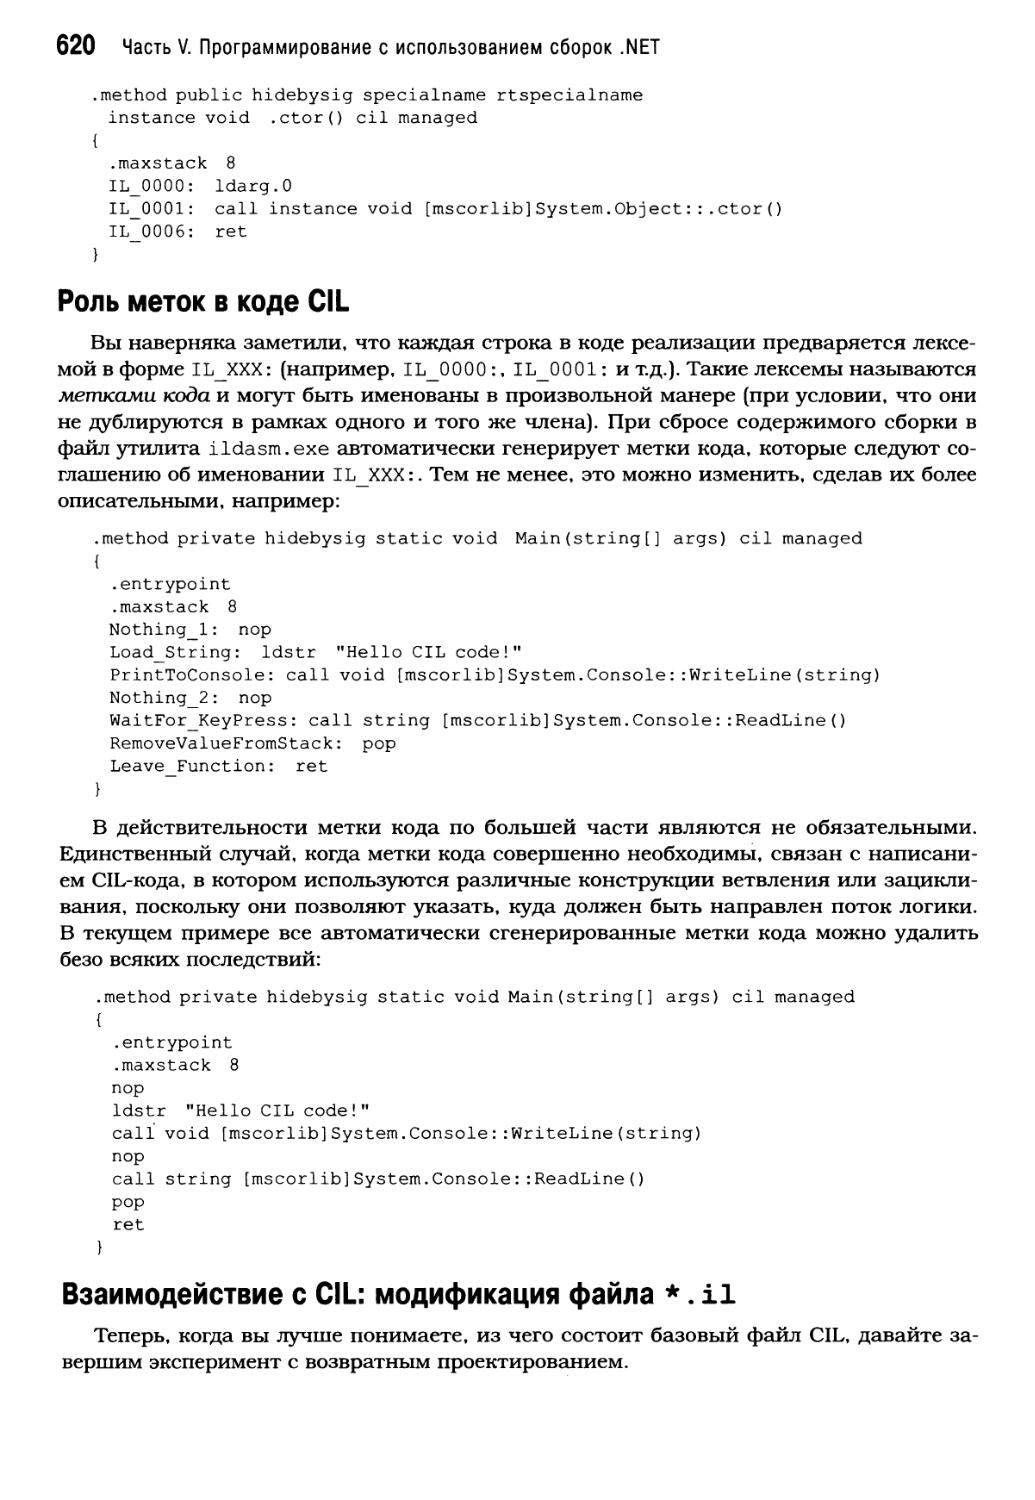 Взаимодействие с CIL: модификация файла *.il